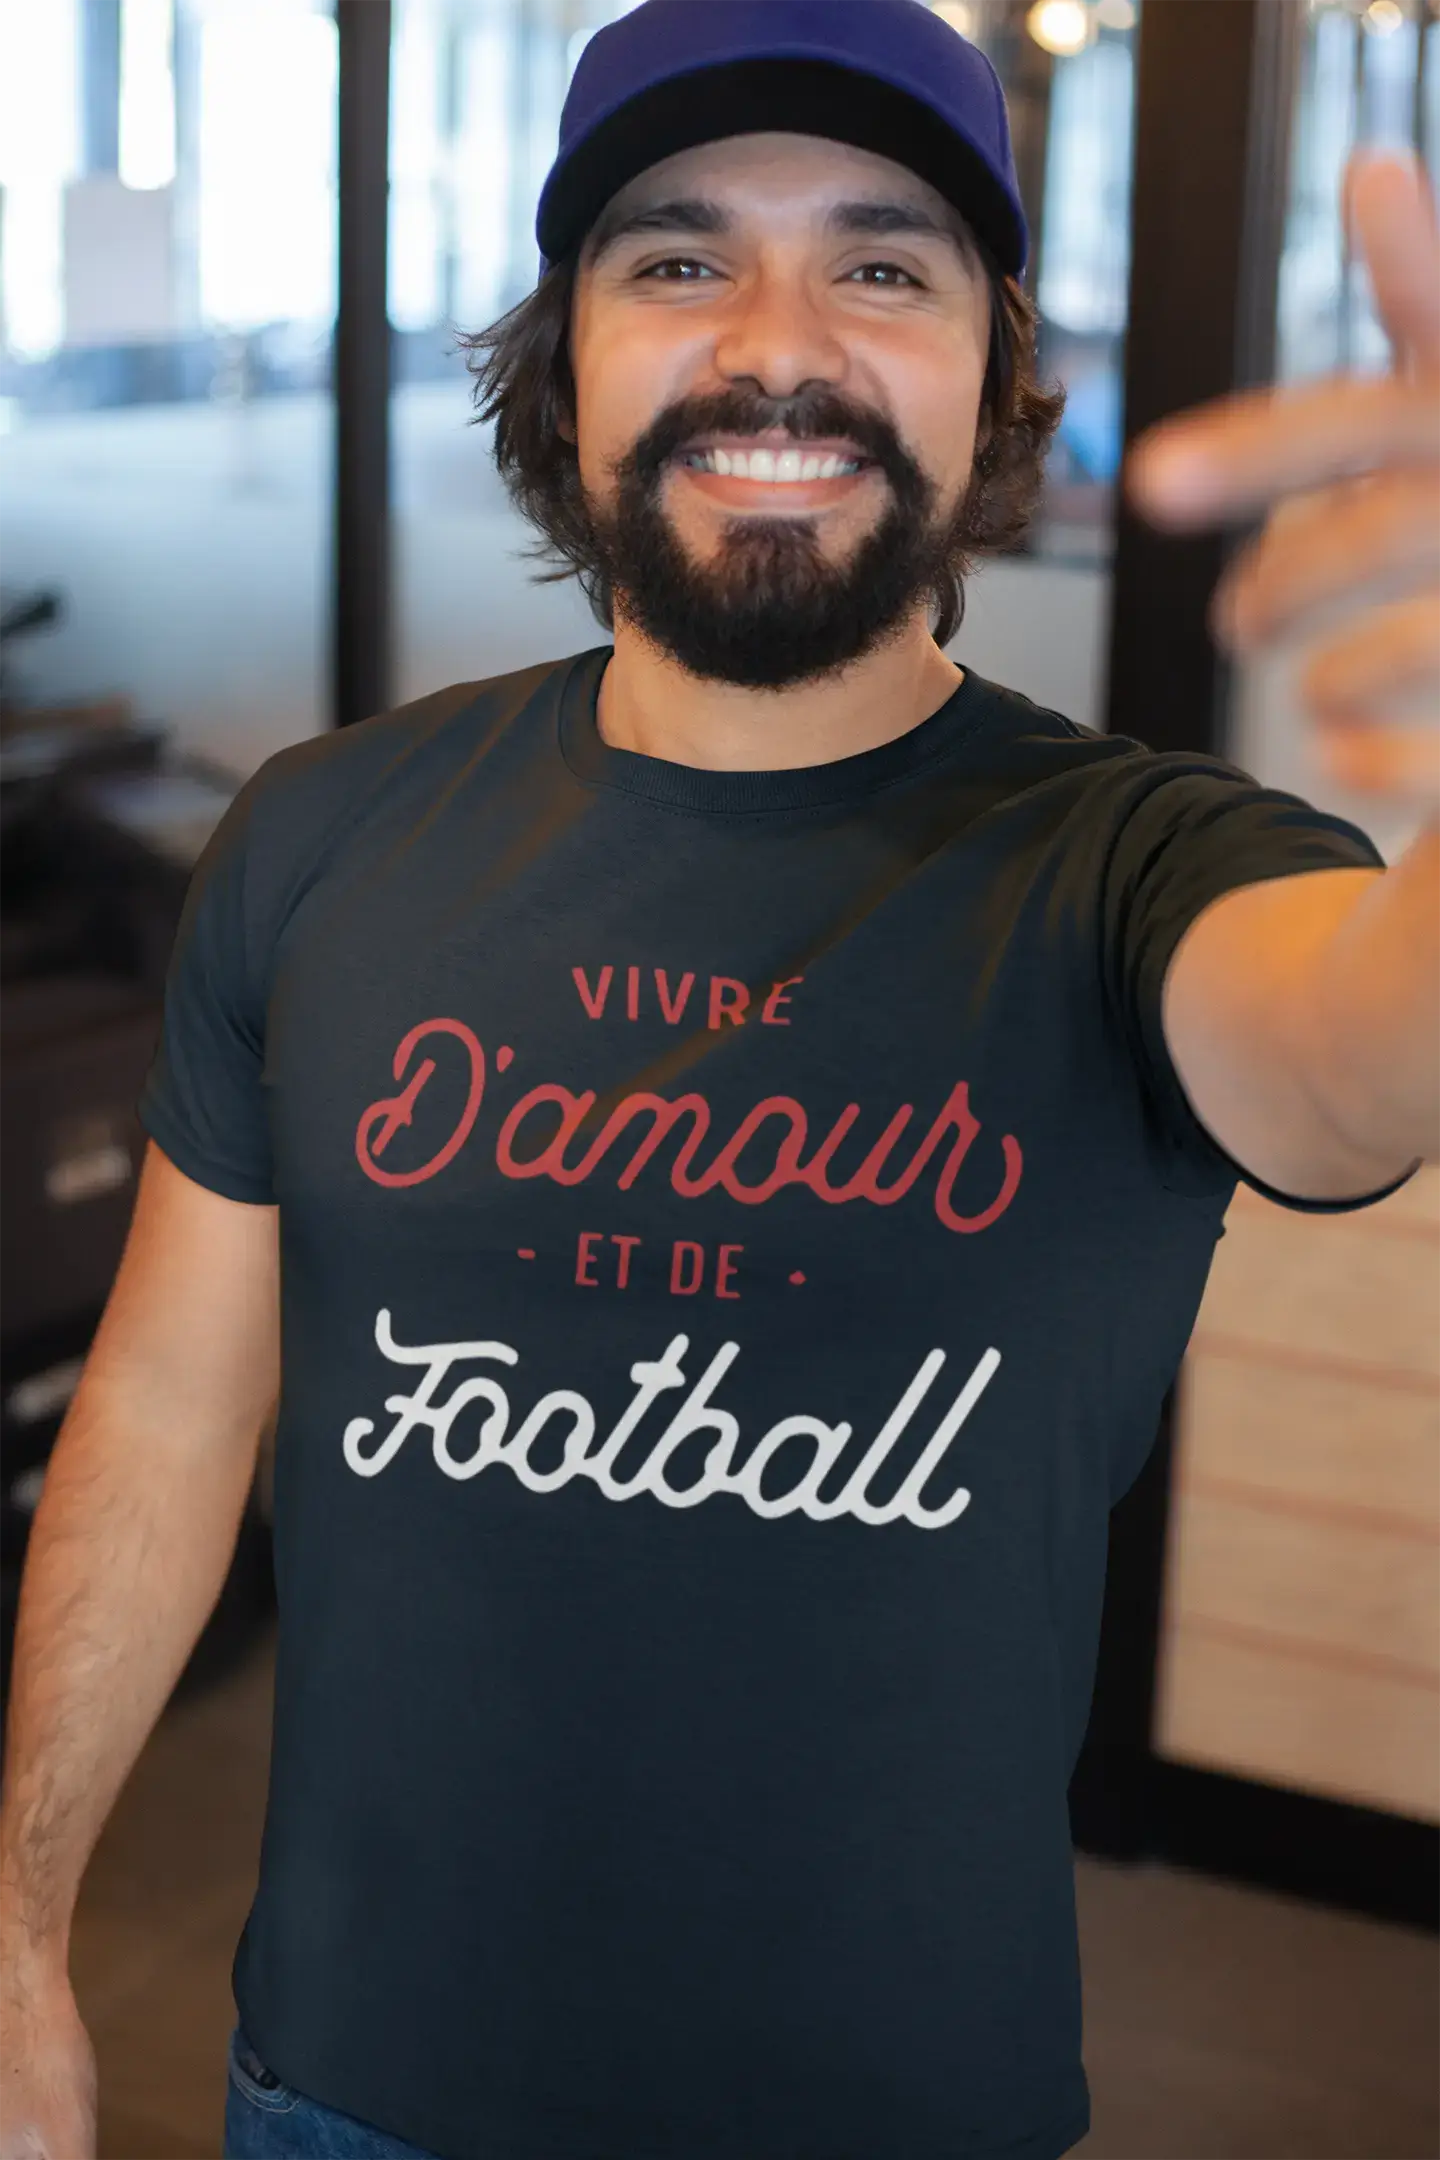 T-Shirt Graphique <span>Homme</span> T-Shirt Papou D'Amour